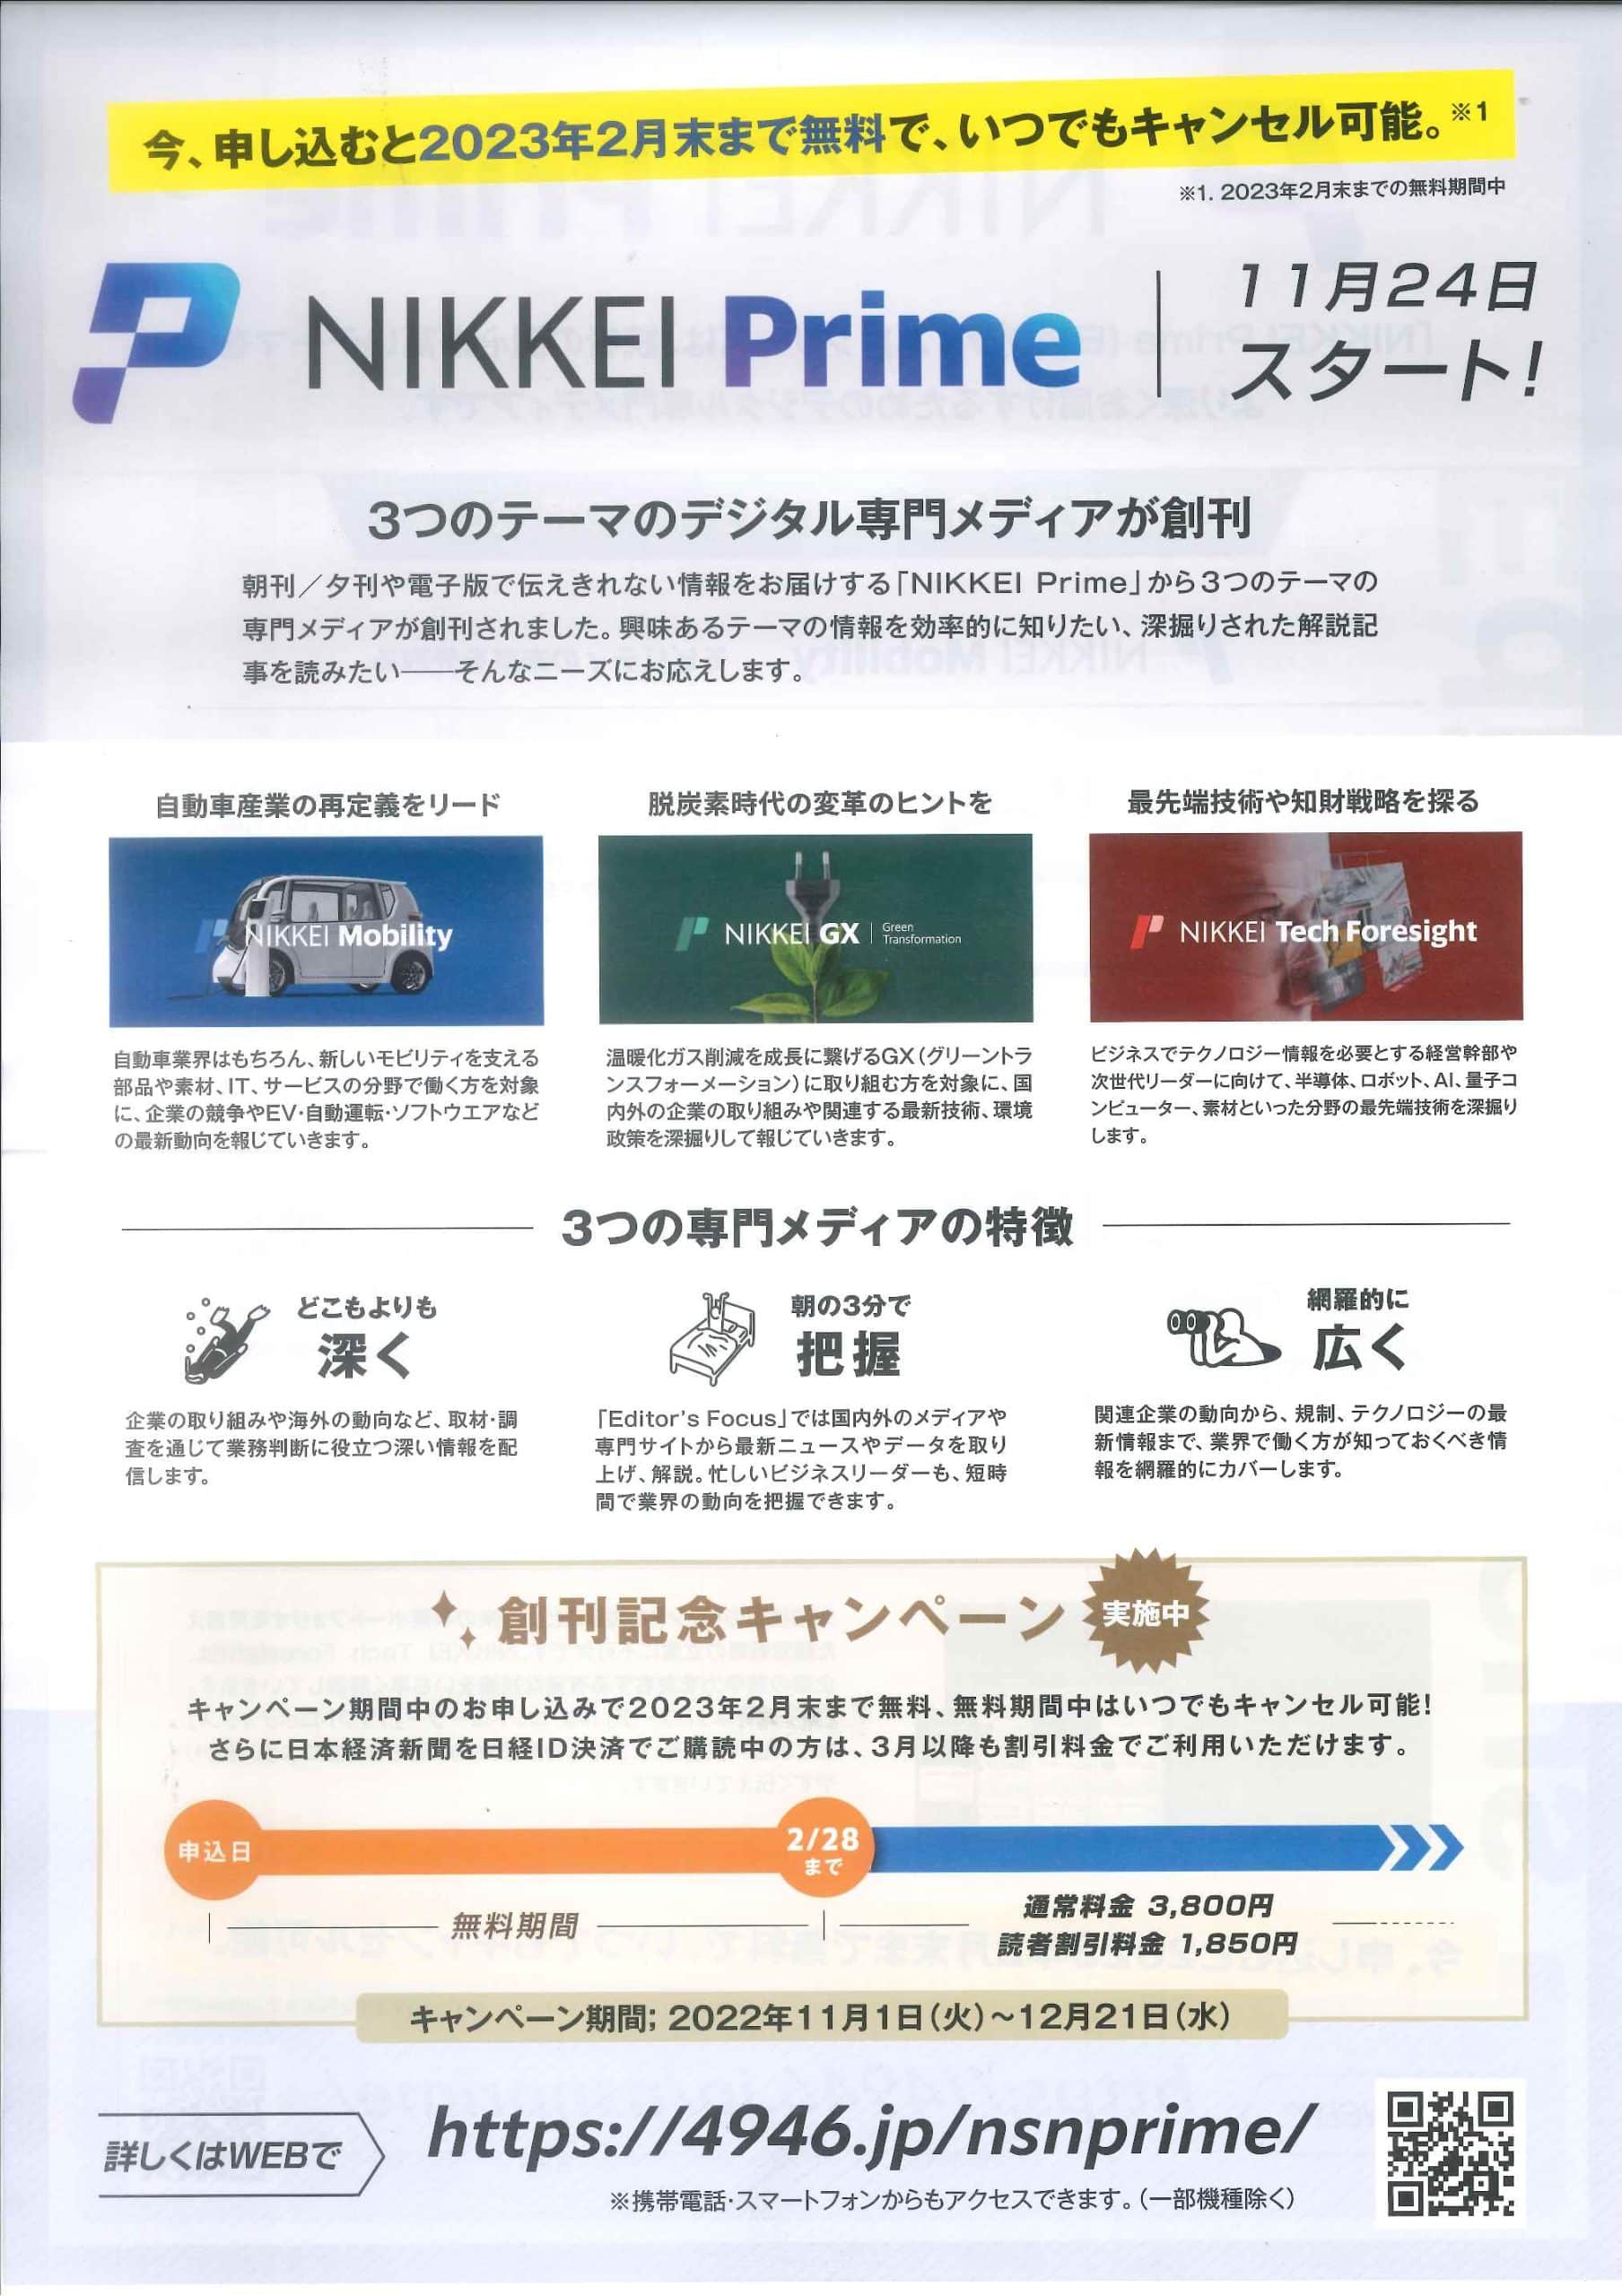 NIKKEI Prime